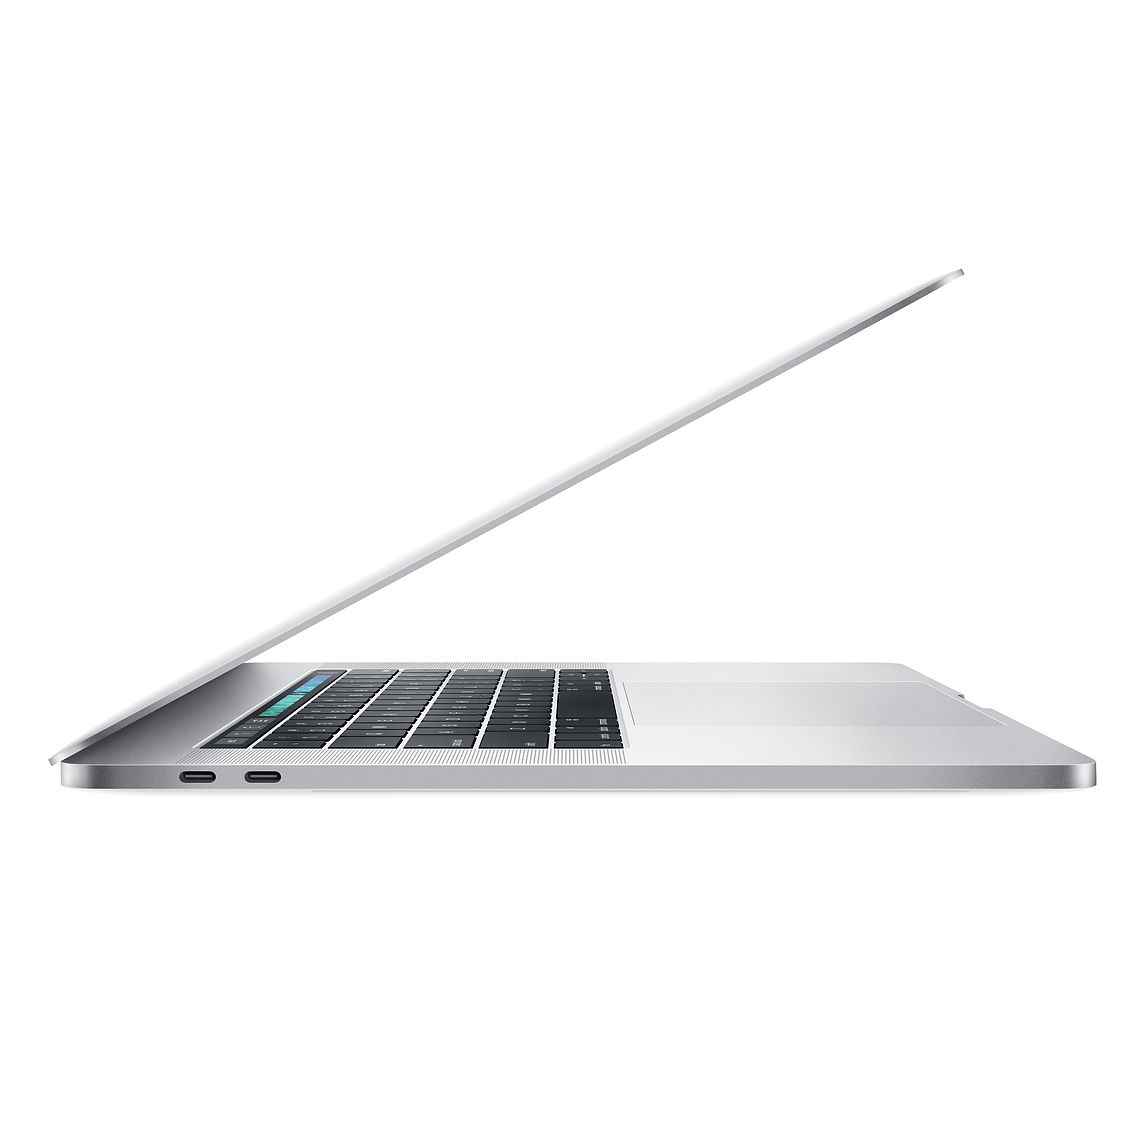 Apple  MacBook Pro  inch, GB RAM, GB Storage, 2.6GHz